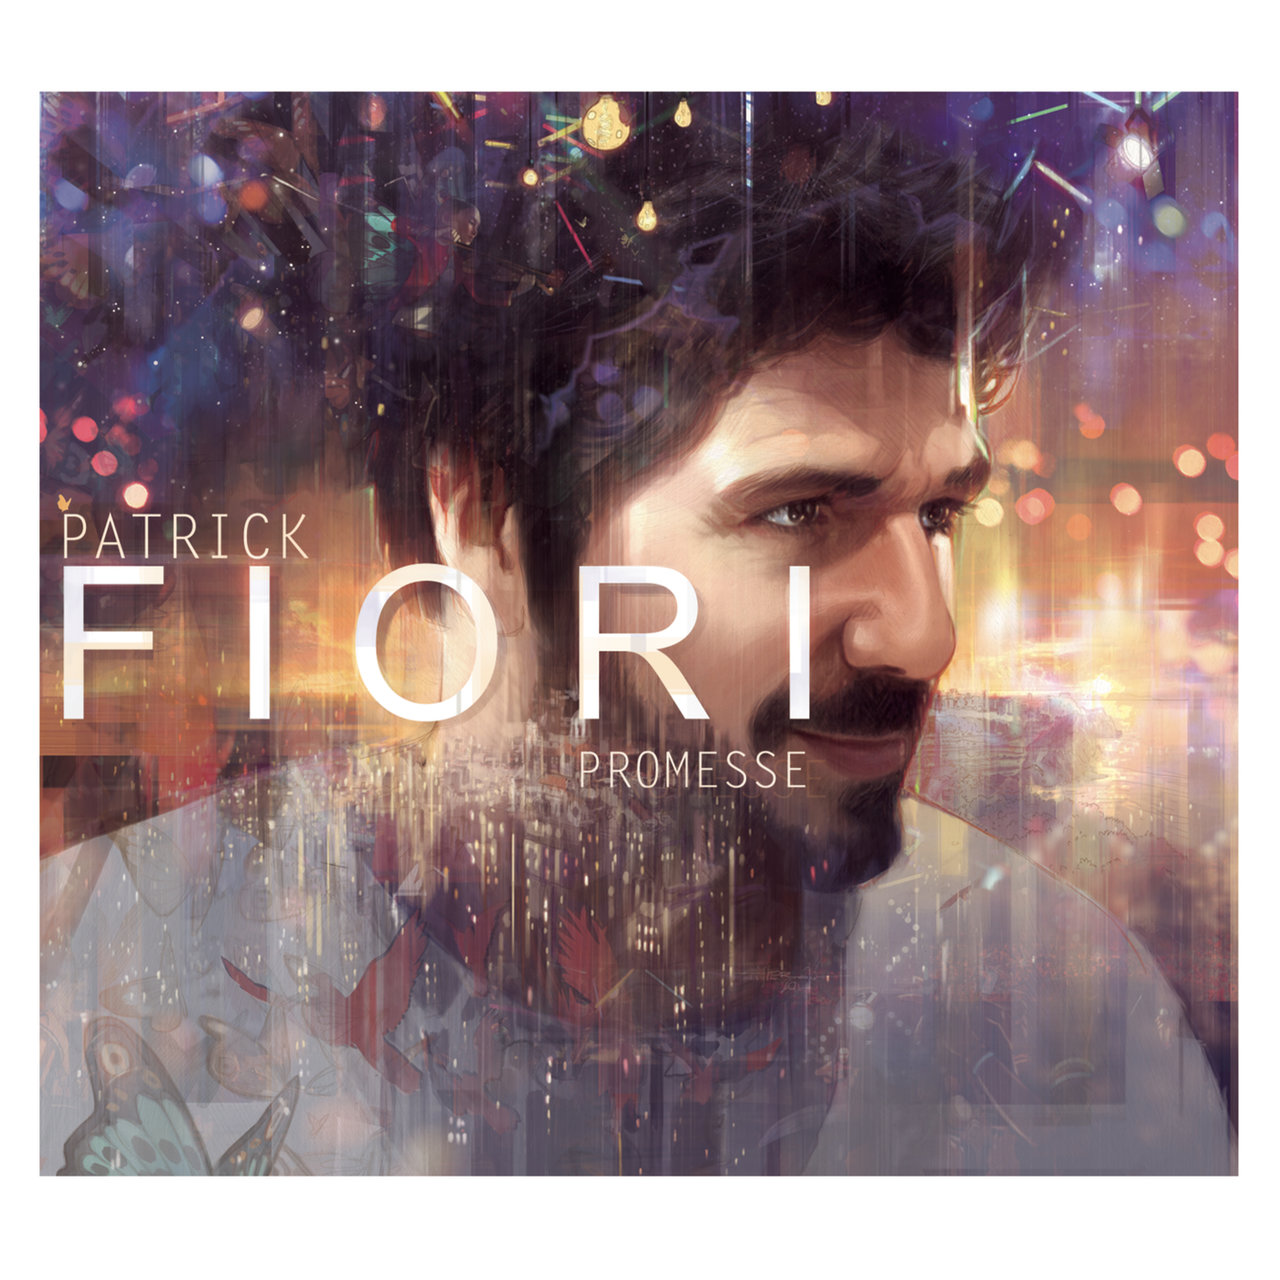 Patrick Fiori Promesse cover artwork